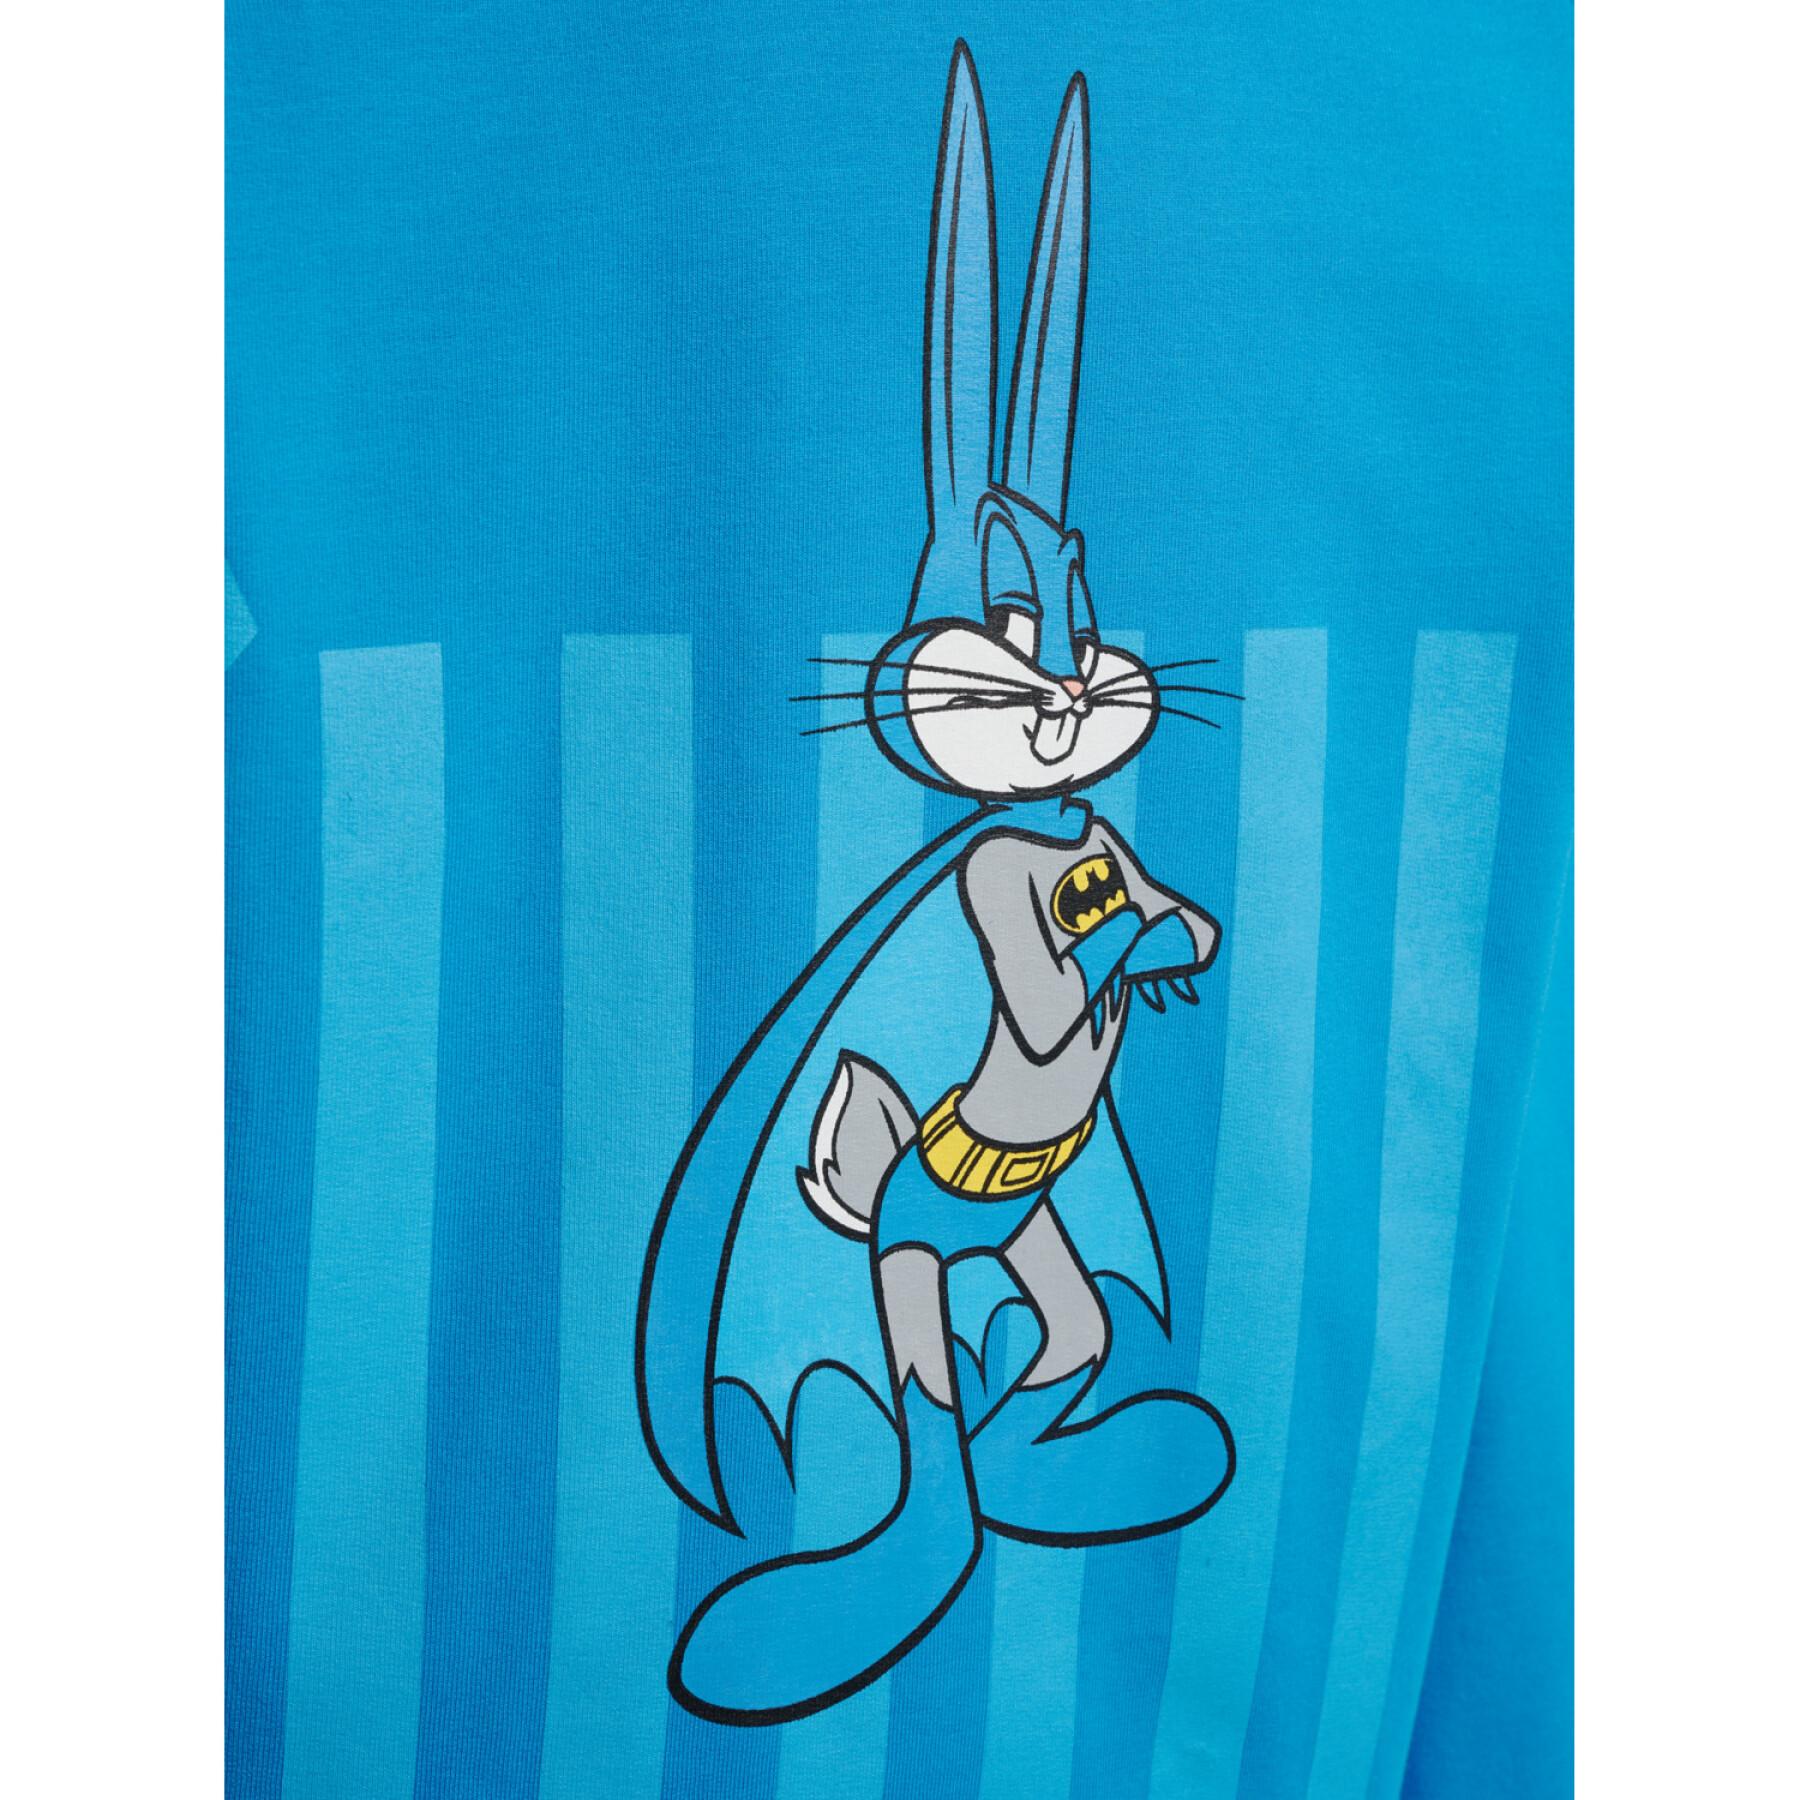 Camisola para criança Hummel Bugs Bunny